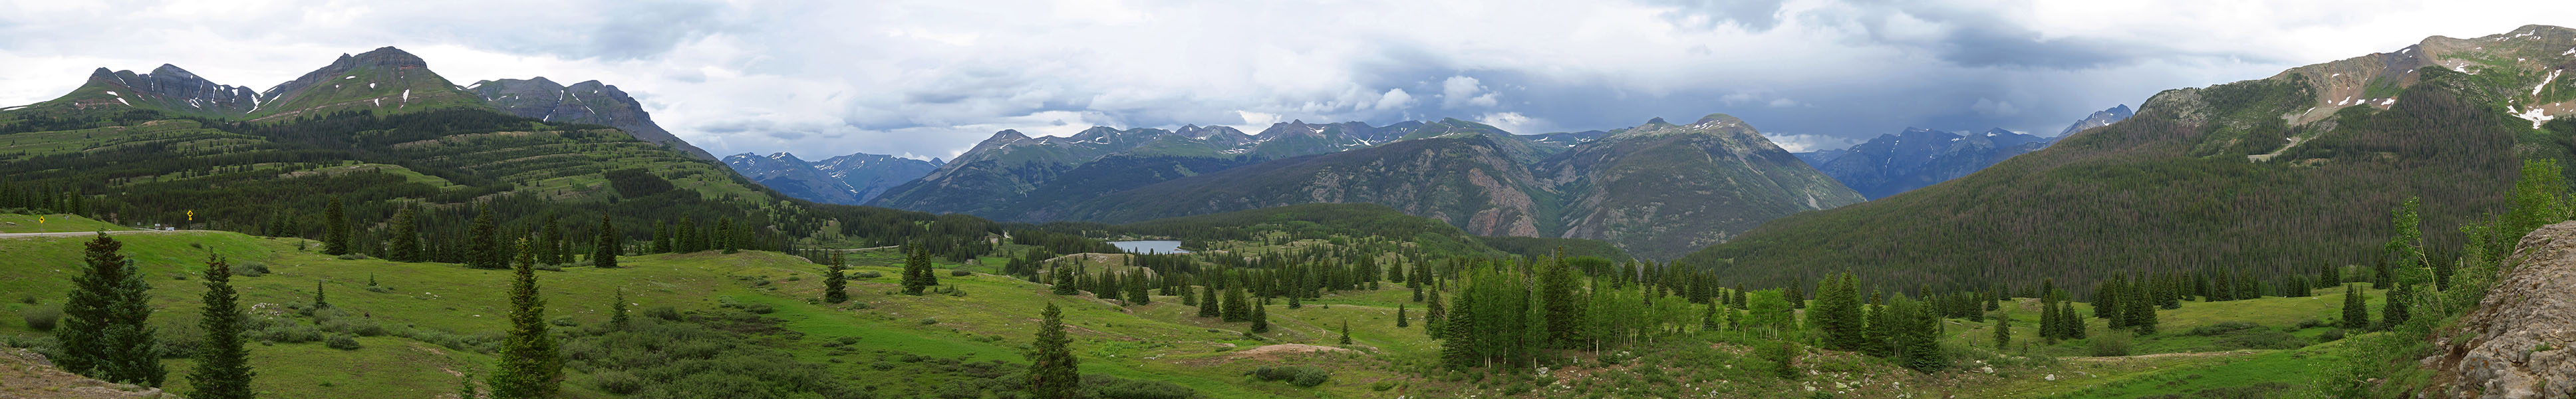 Molas Pass panorama [Molas Pass, San Juan National Forest, San Juan County, Colorado]